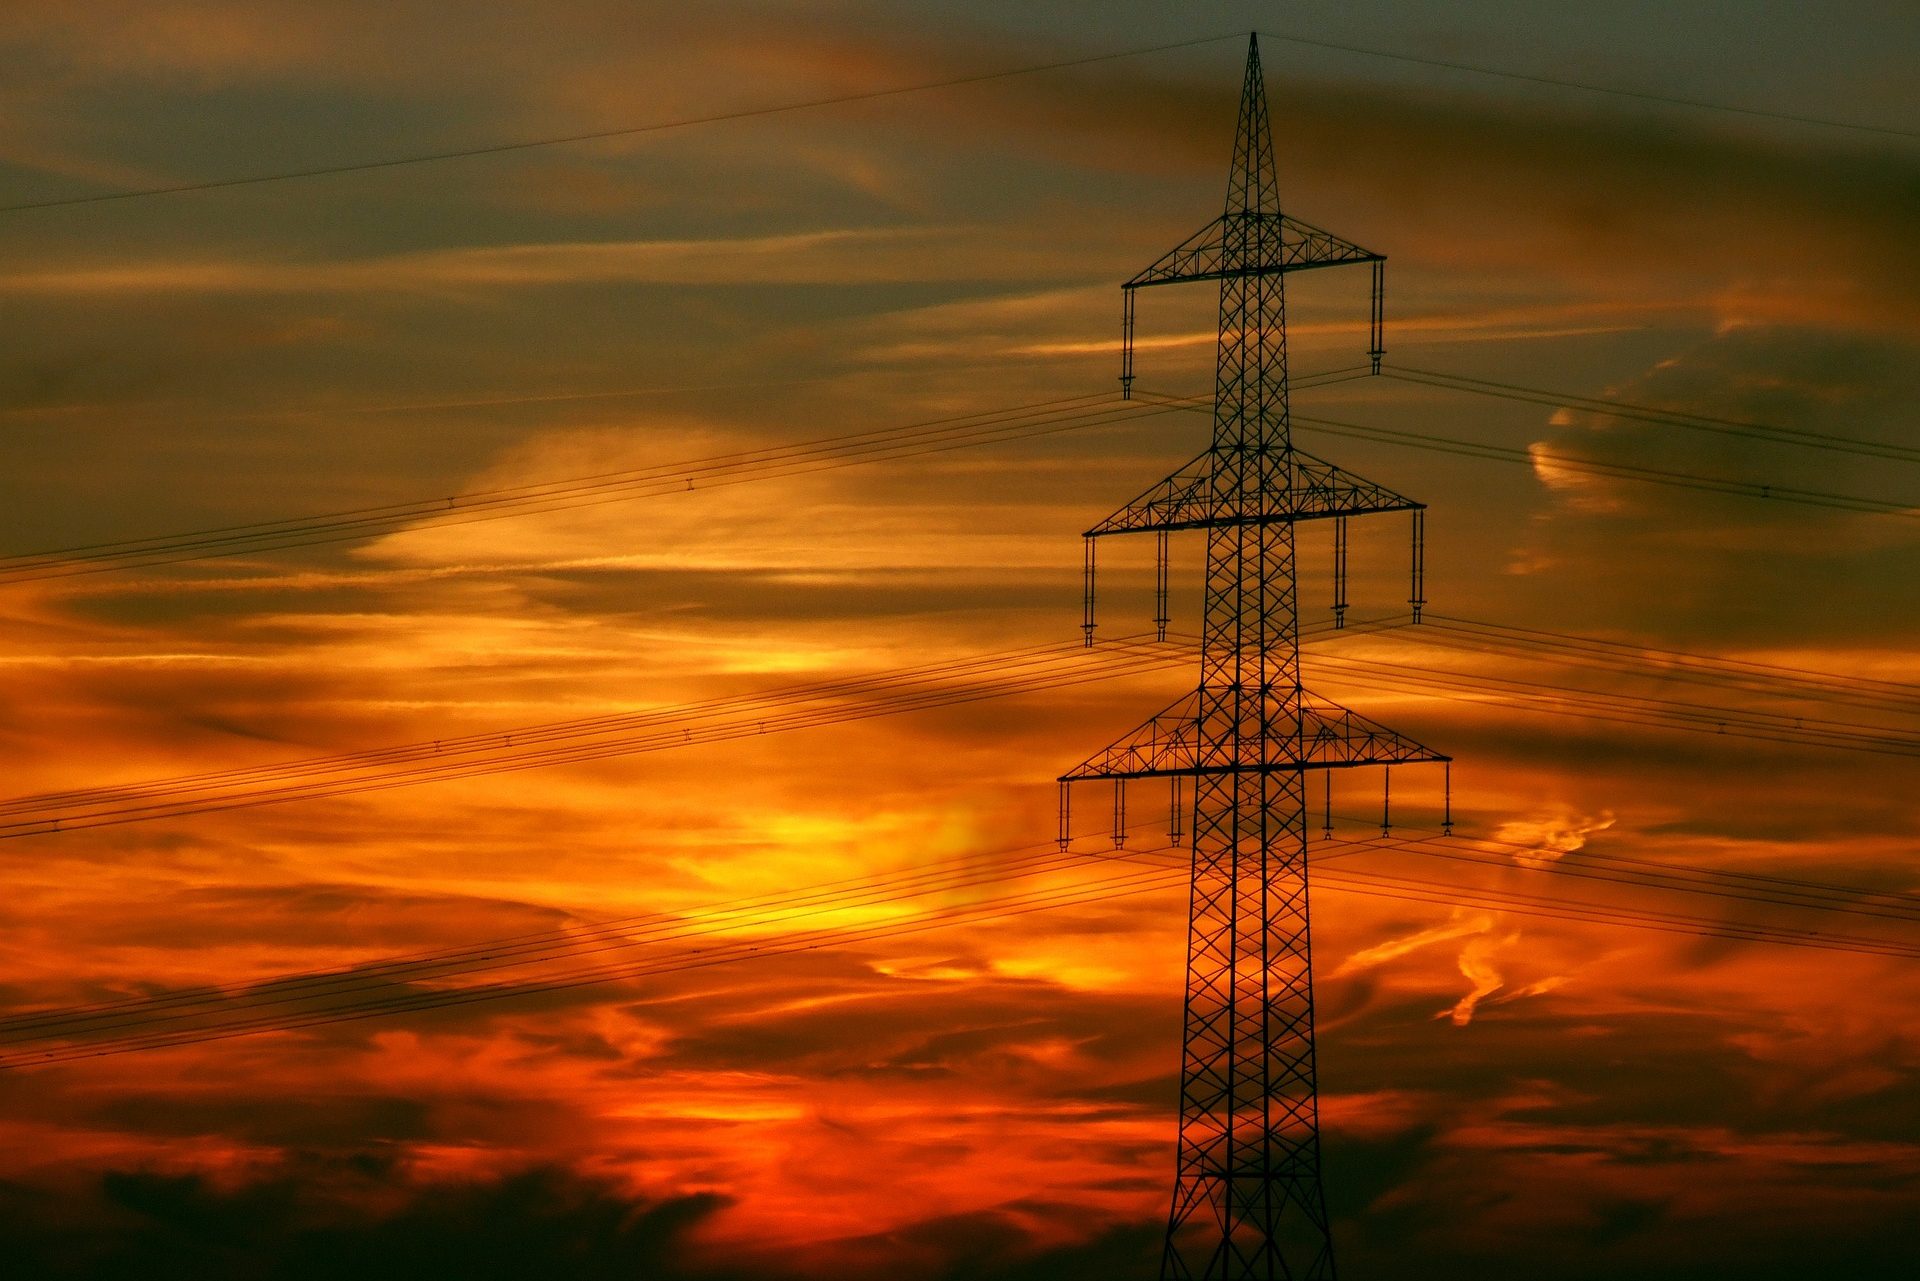 Onda de calor, que já  chegou ao Brasil, aumenta consumo de energia elétrica. Na imagem: Torre de transmissão de energia de alta tensão durante sunset com céu alaranjado com poucas nuvens (Foto: Pixabay)